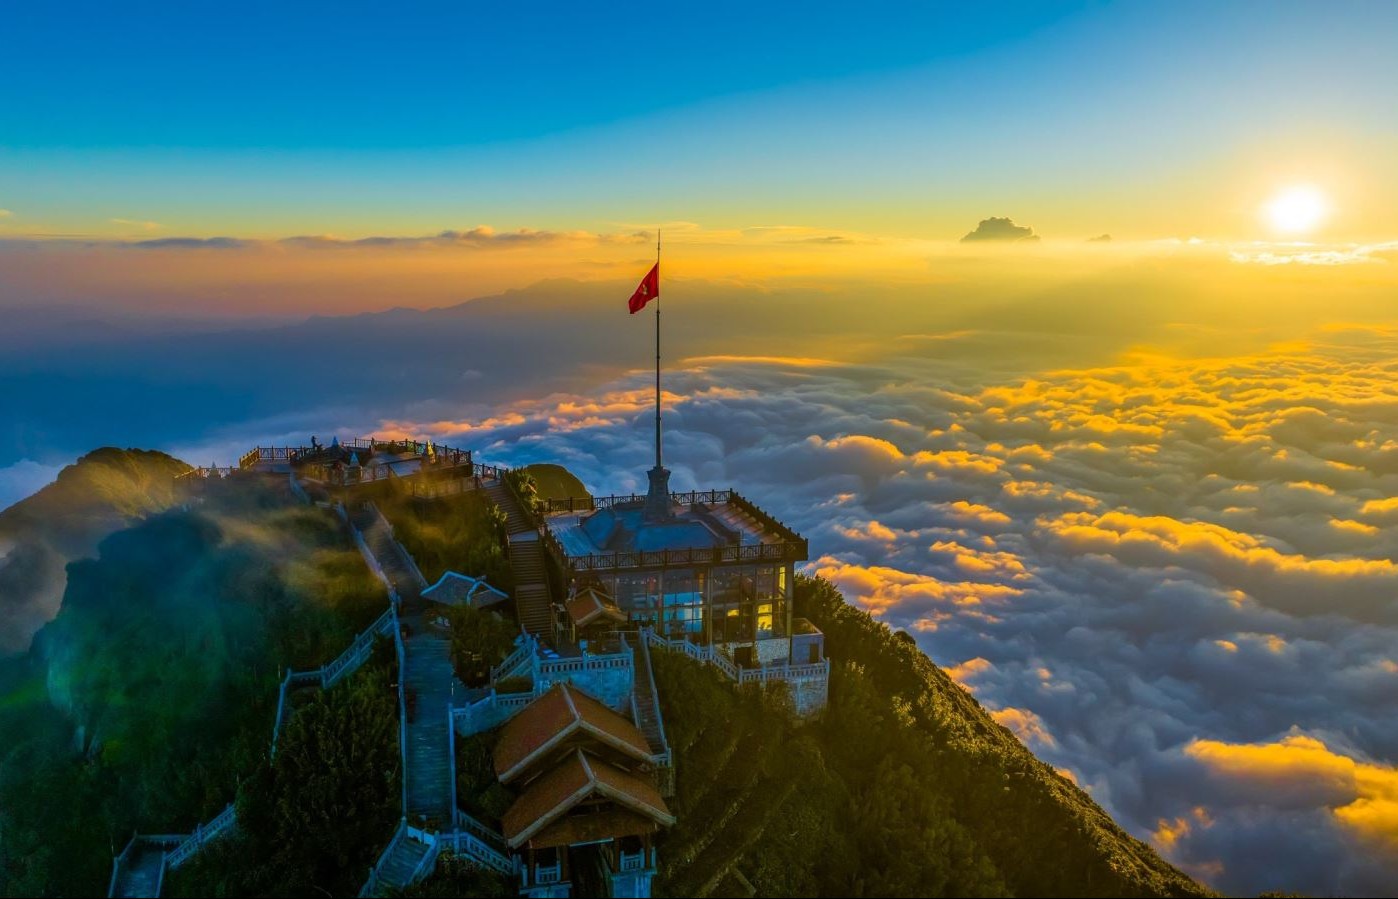 Ưu đãi 30% giá vé cho du khách Việt Nam đi cáp treo du ngoạn đỉnh Fansipan